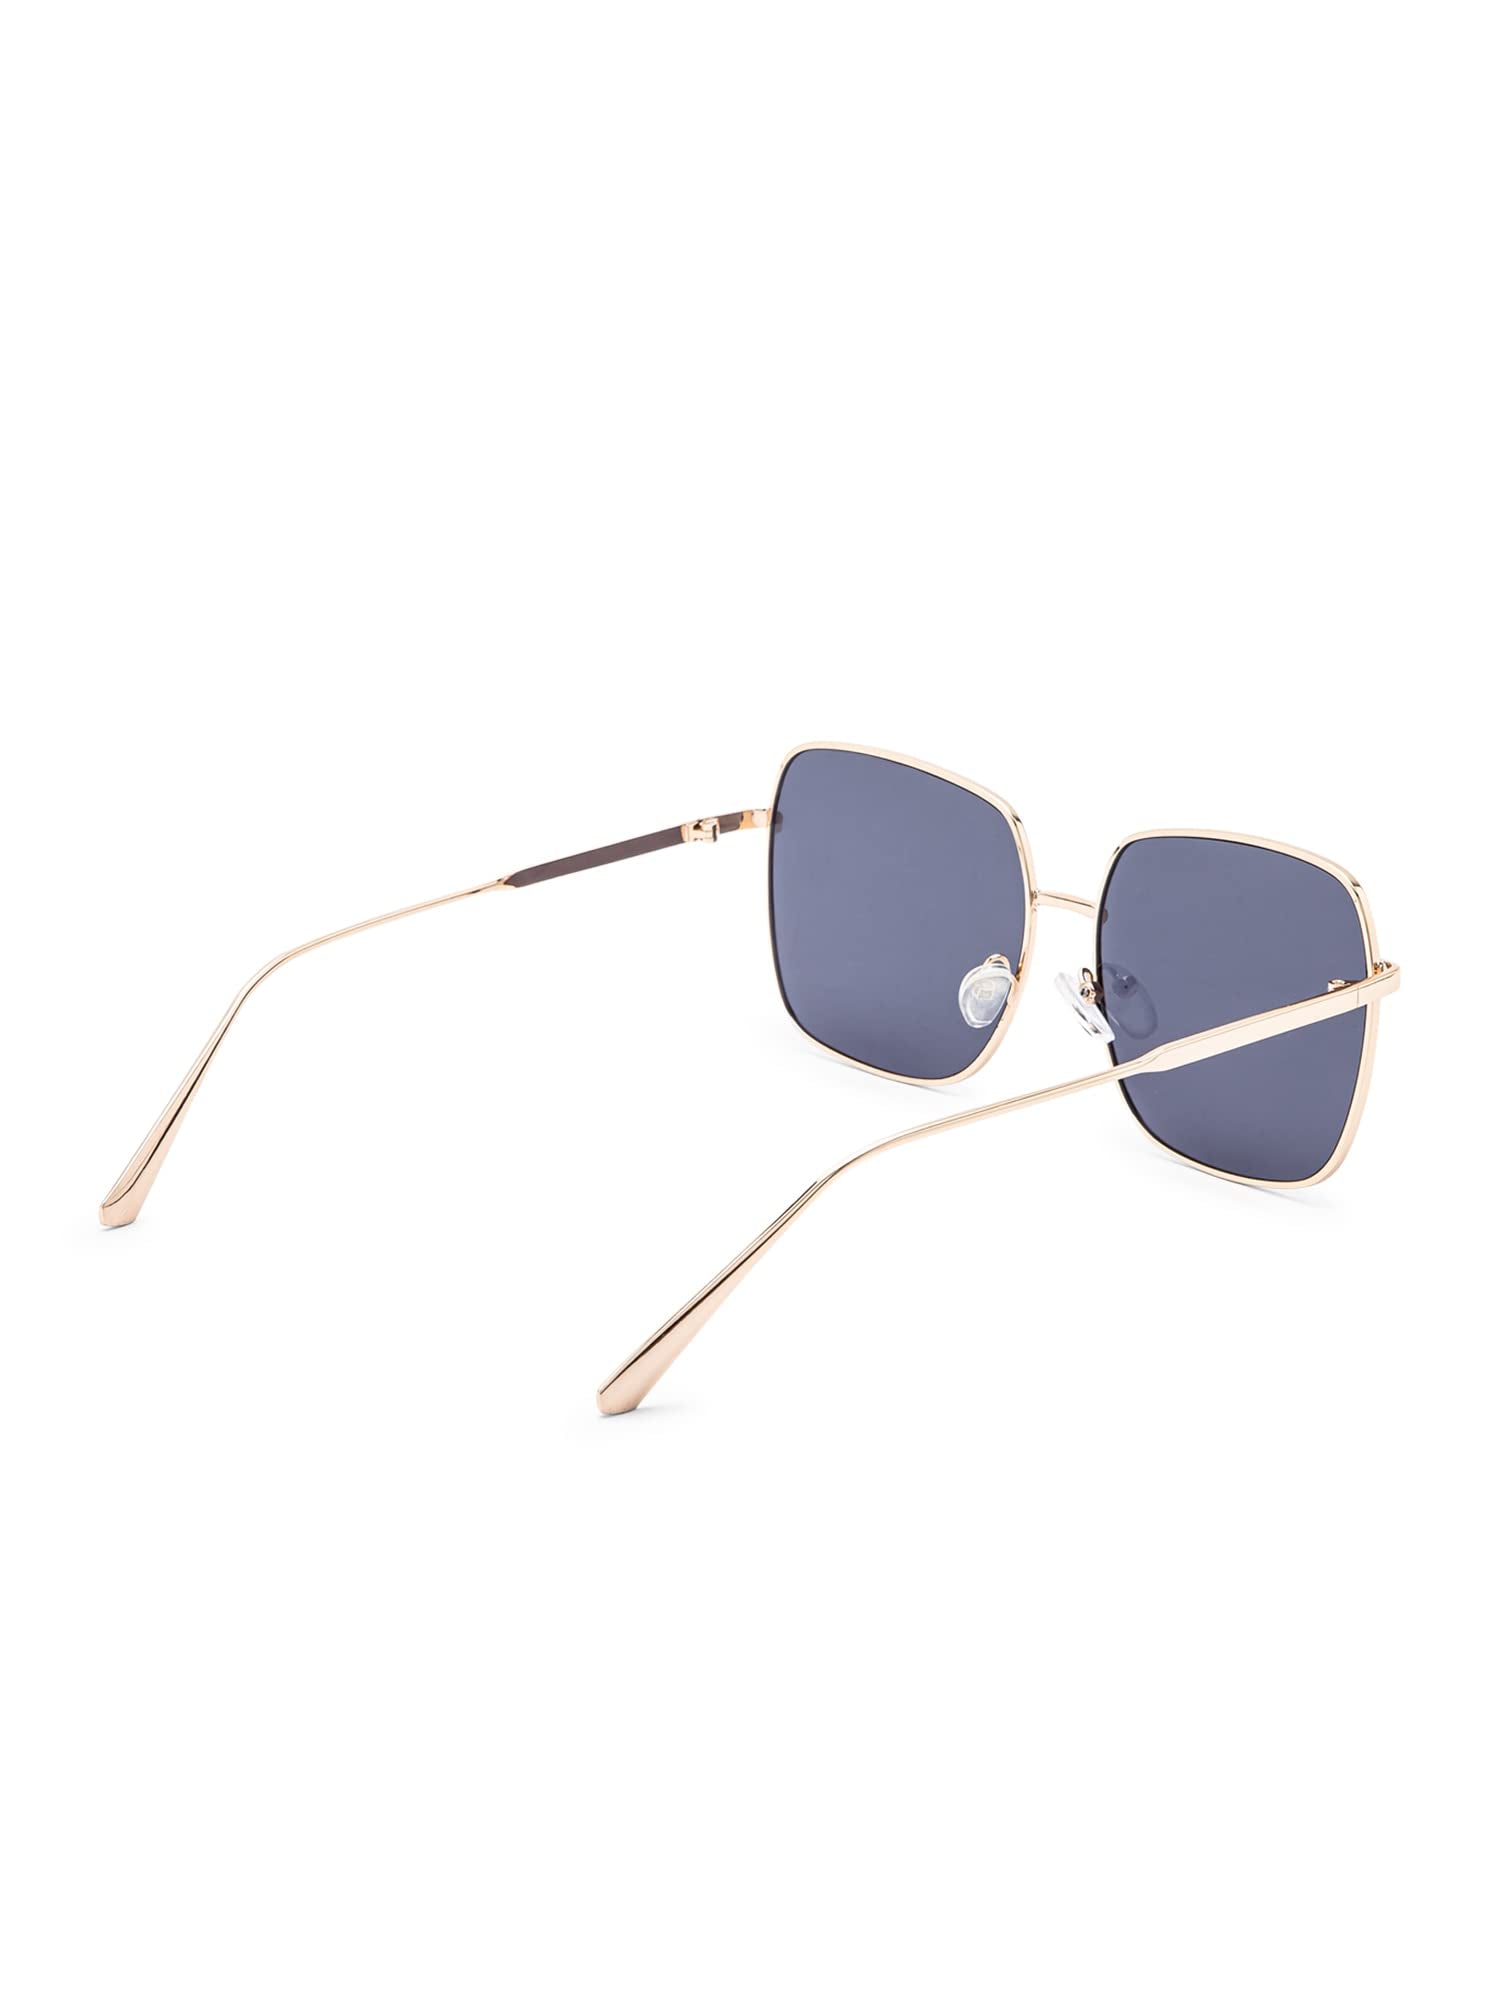 Intellilens Square UV Protection Sunglasses For Men & Women